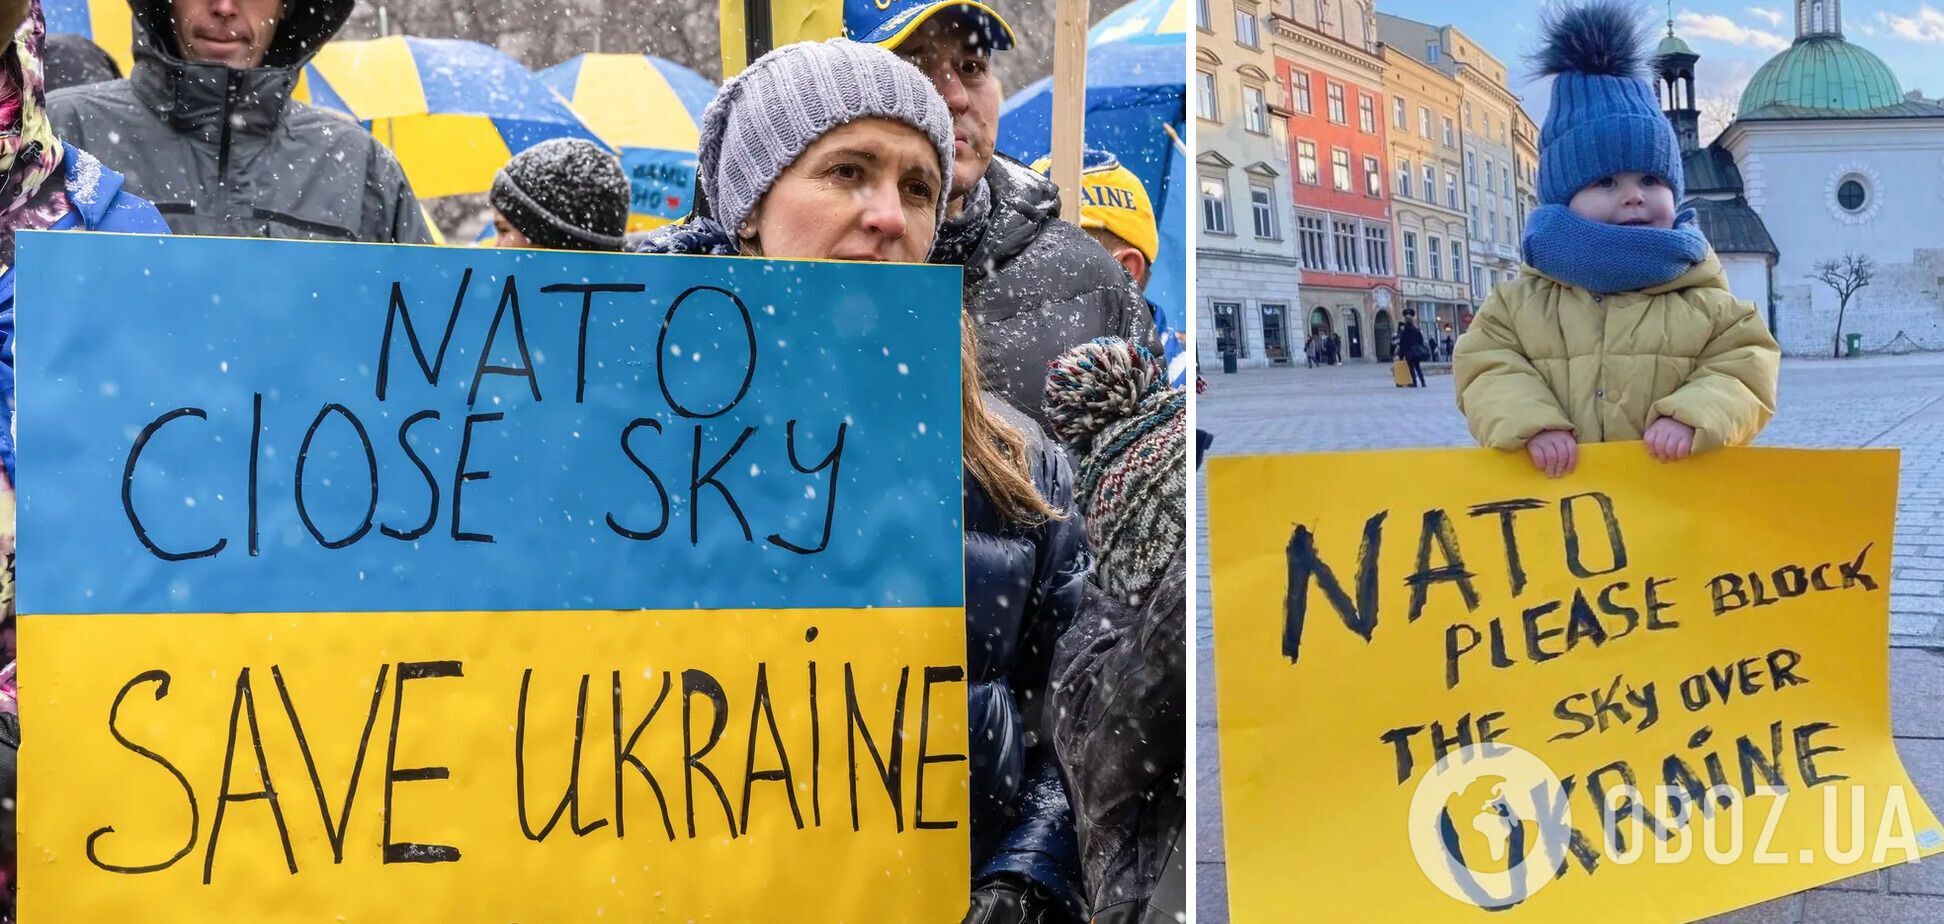 Кристина Квин объяснила, почему НАТО не закрывает небо над Украиной, и заявила об альтернативе